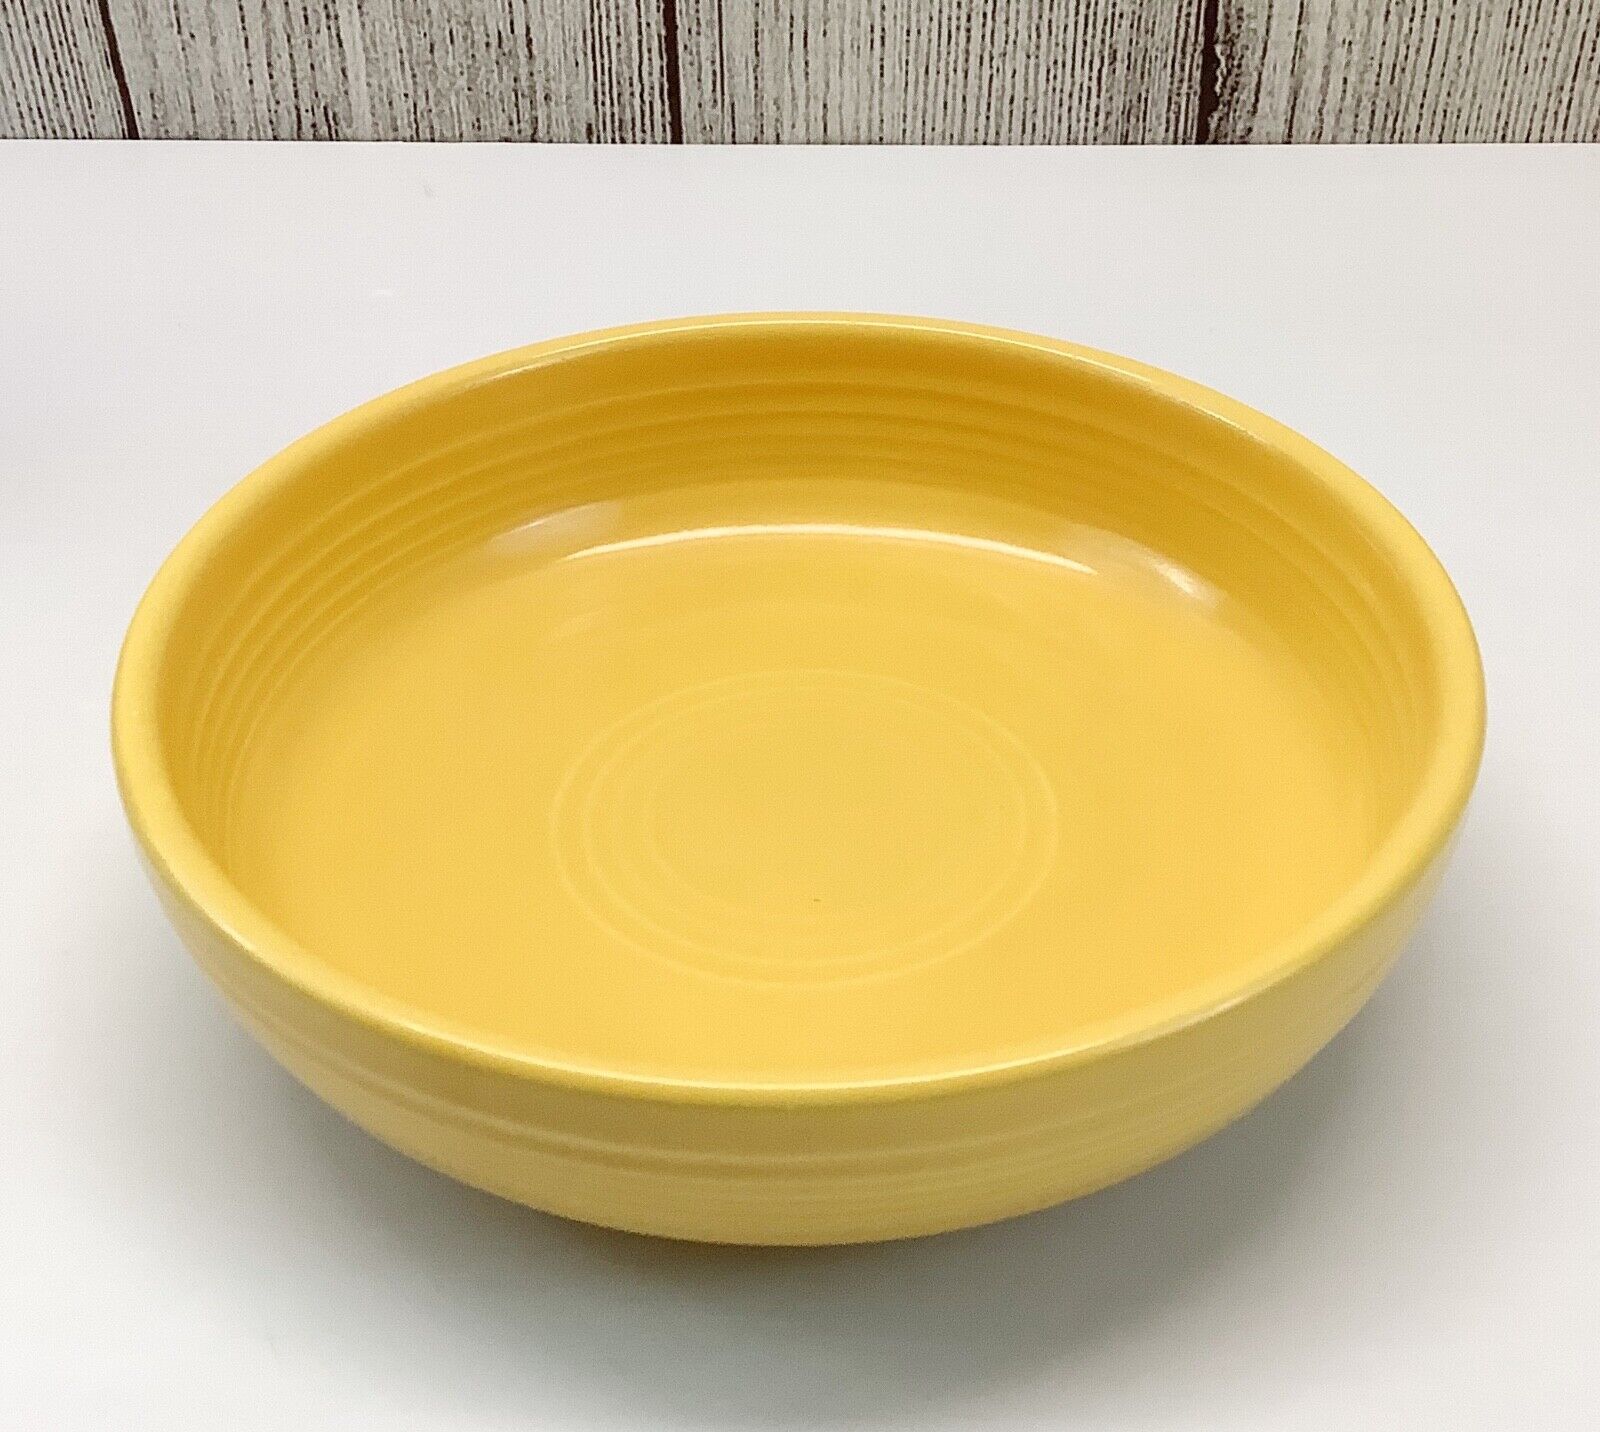 Homer Laughlin Fiesta Fiestaware Yellow Dessert Bowl 6”x1.75” Vintage 1937-51